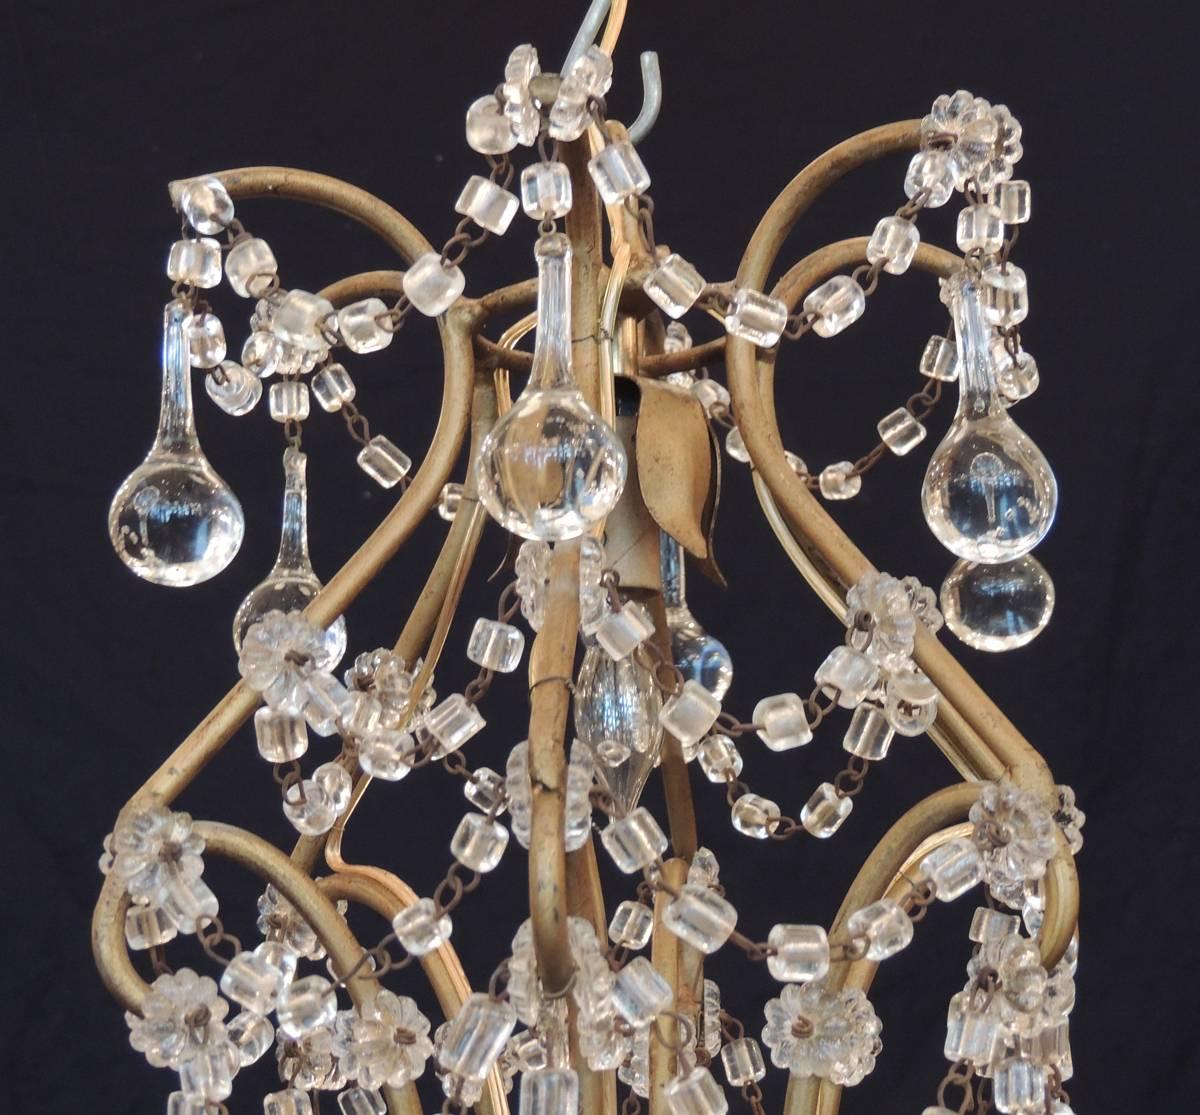 Ce lustre italien a été fabriqué à Venise au cours de la première moitié du 20e siècle, vers 1930, et présente un cadre de style cage à oiseaux avec trois bougies décorées d'une houppe en cristal et de gouttes françaises. Le luminaire est construit